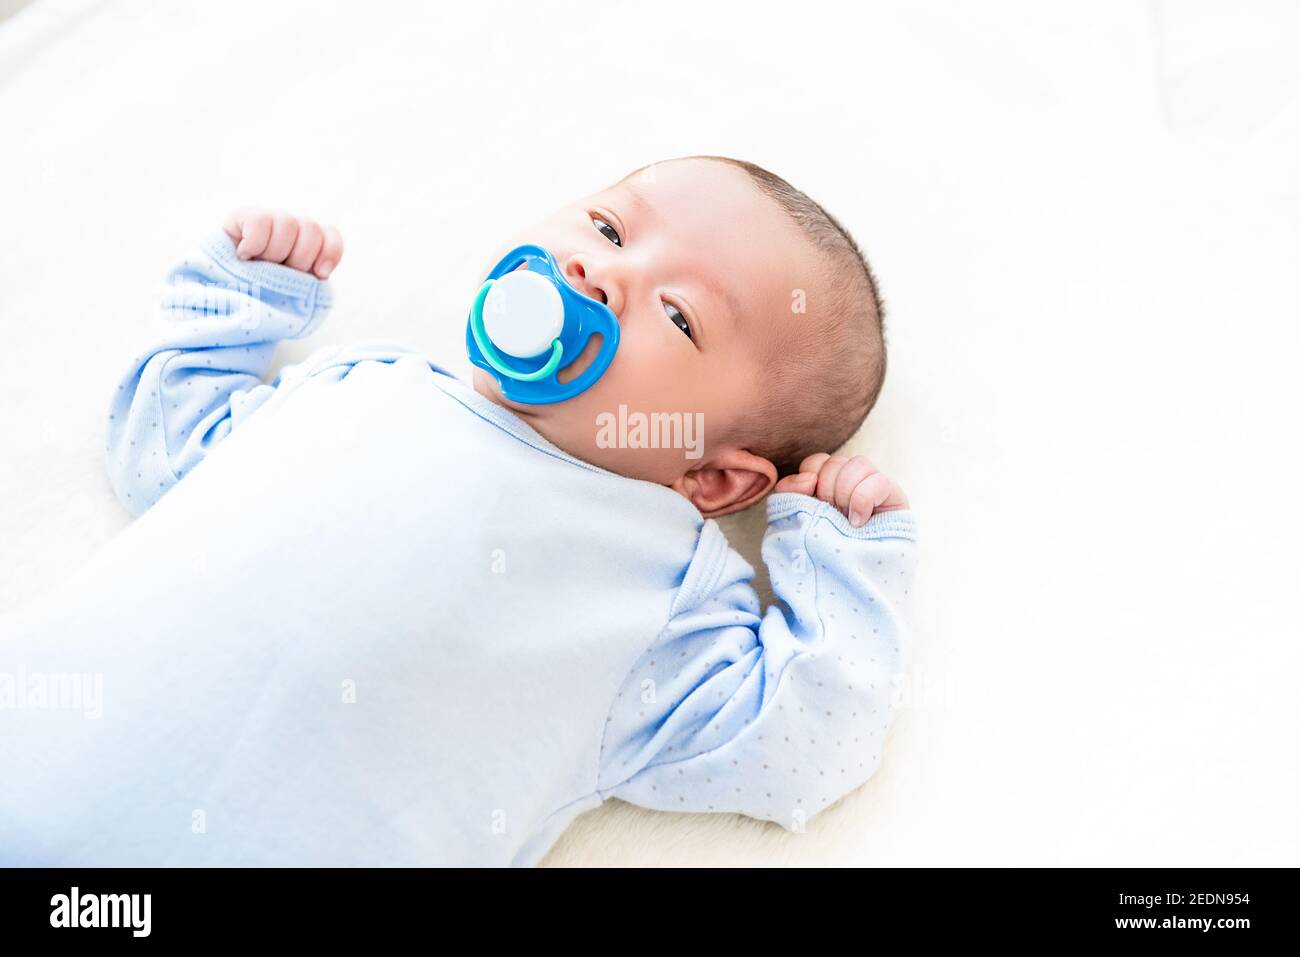 Liebenswert kleines neugeborenes Baby liegt auf weißem Bettlaken mit Dummy in ihrem Mund Stockfoto